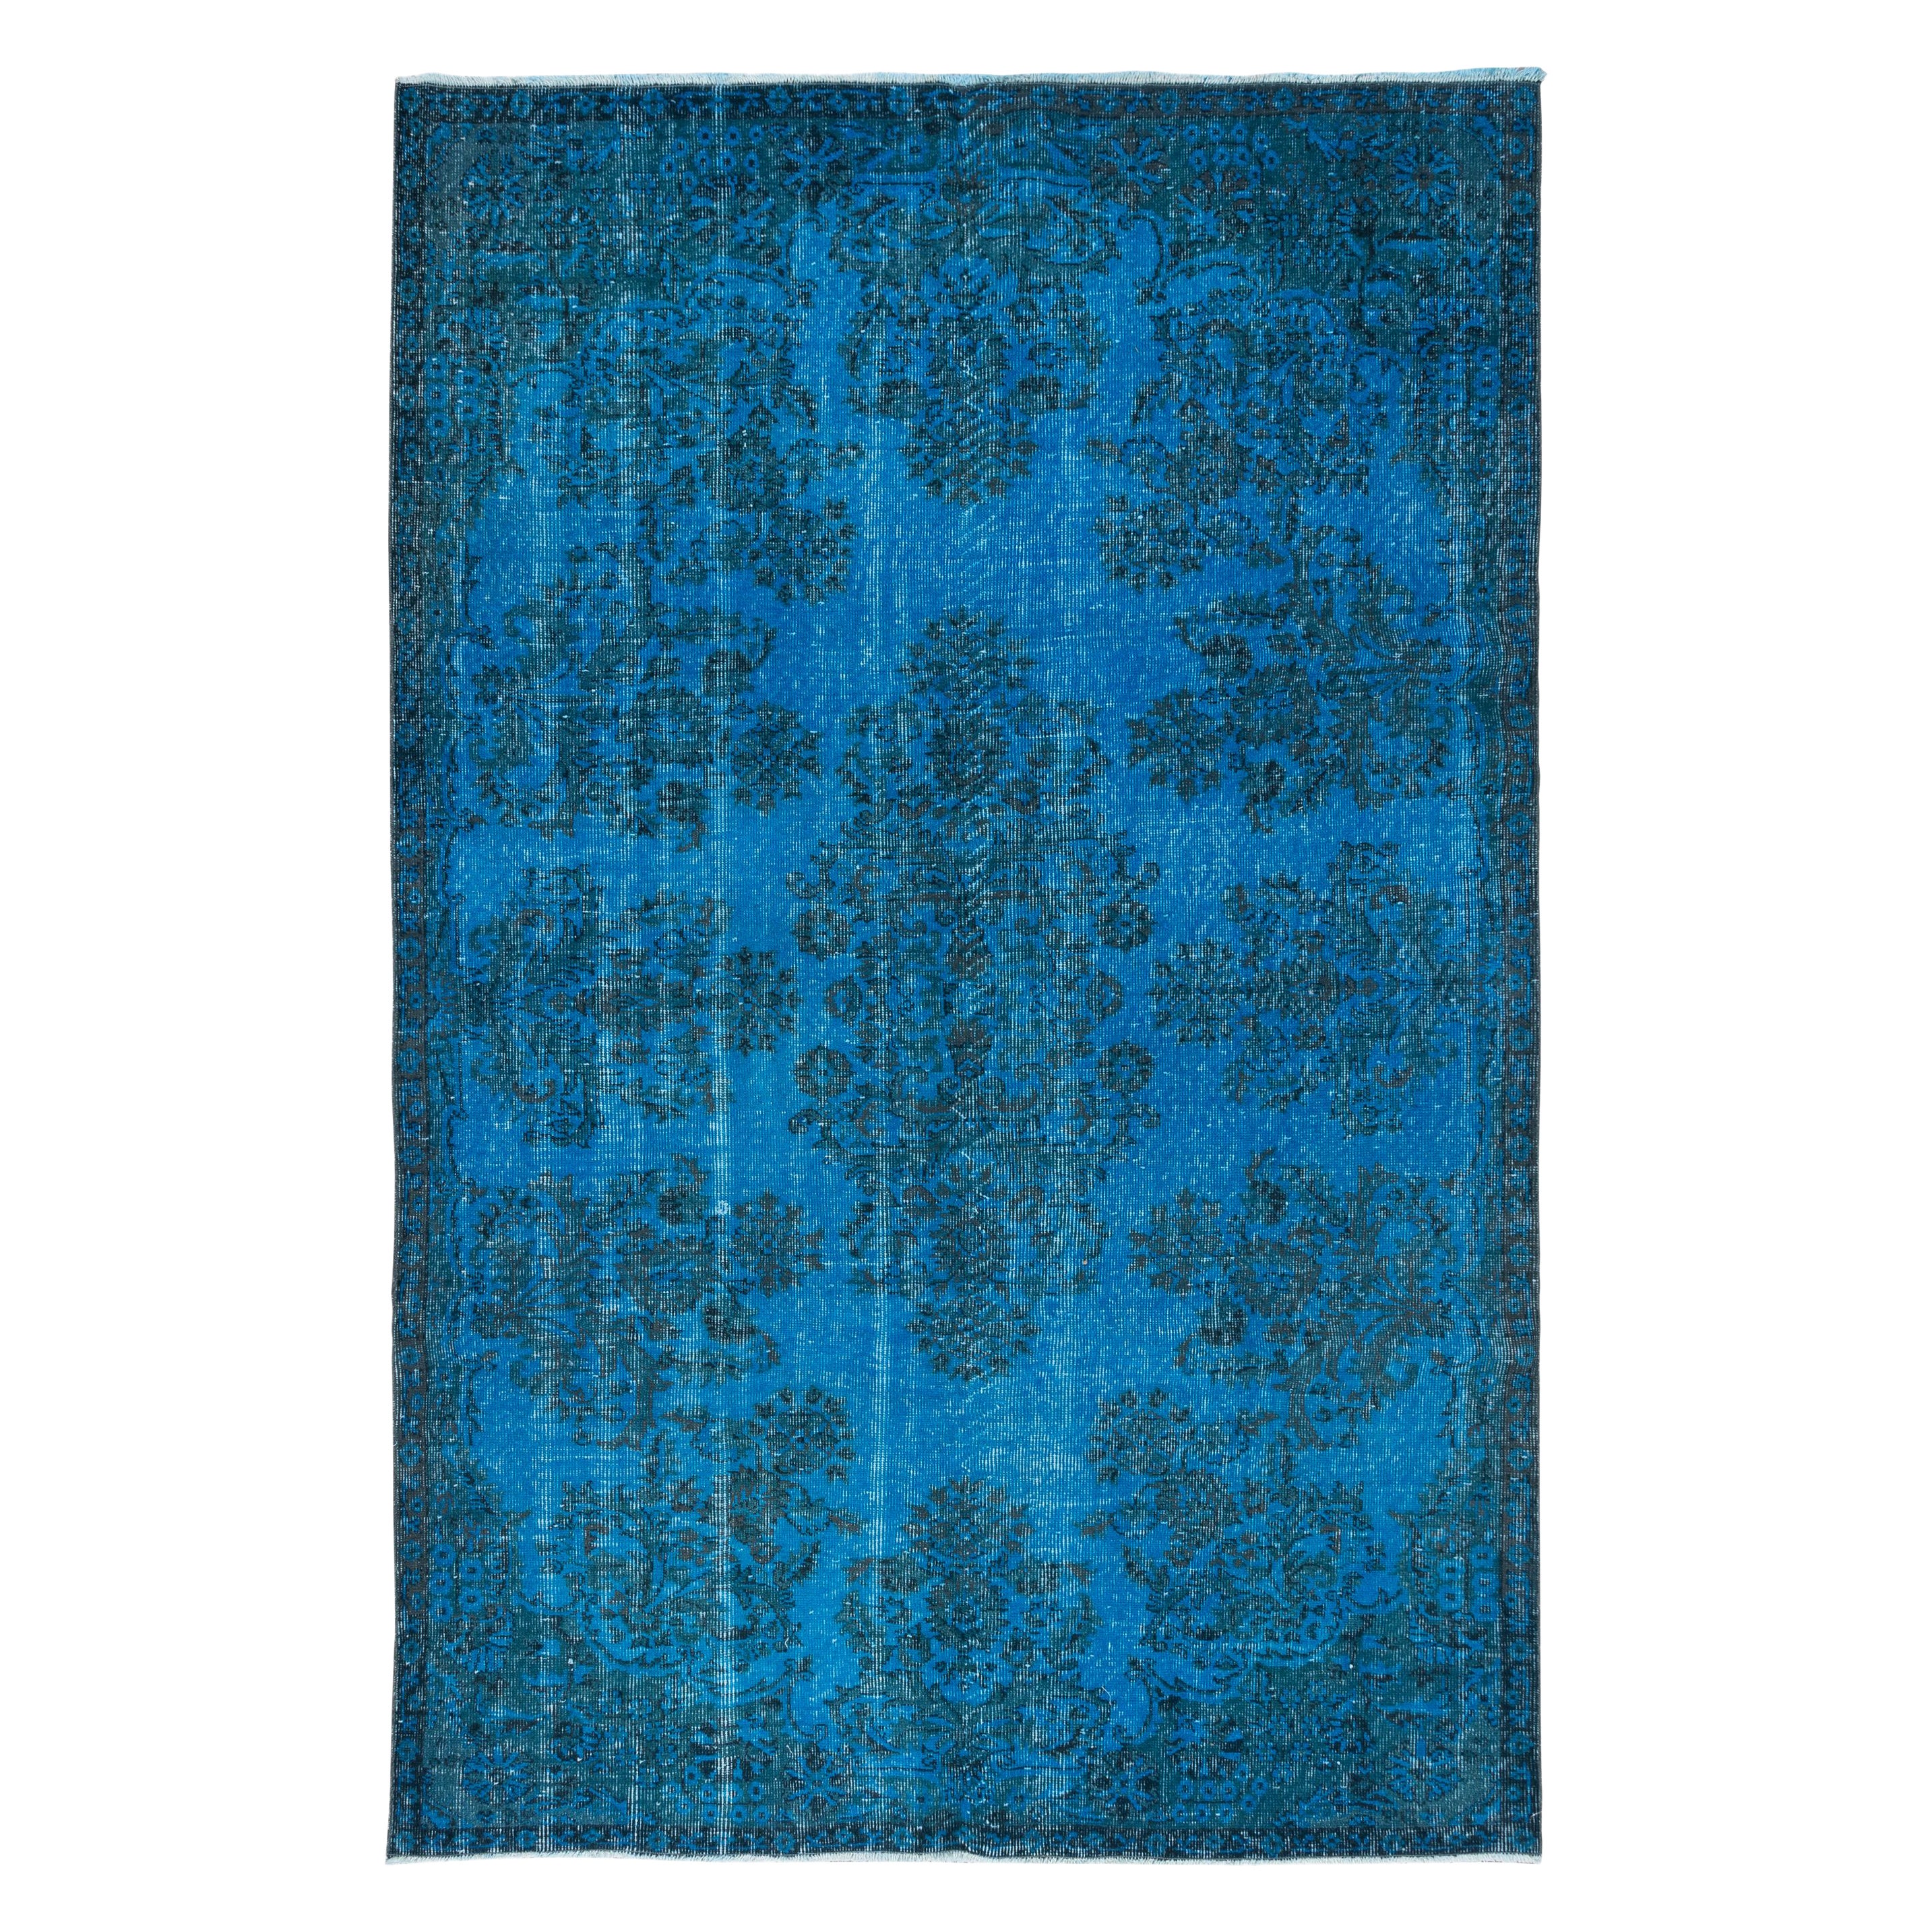 5.6x8.6 Ft Blue Modern Area Rug from Turkey, Handmade Carpet for Living Room